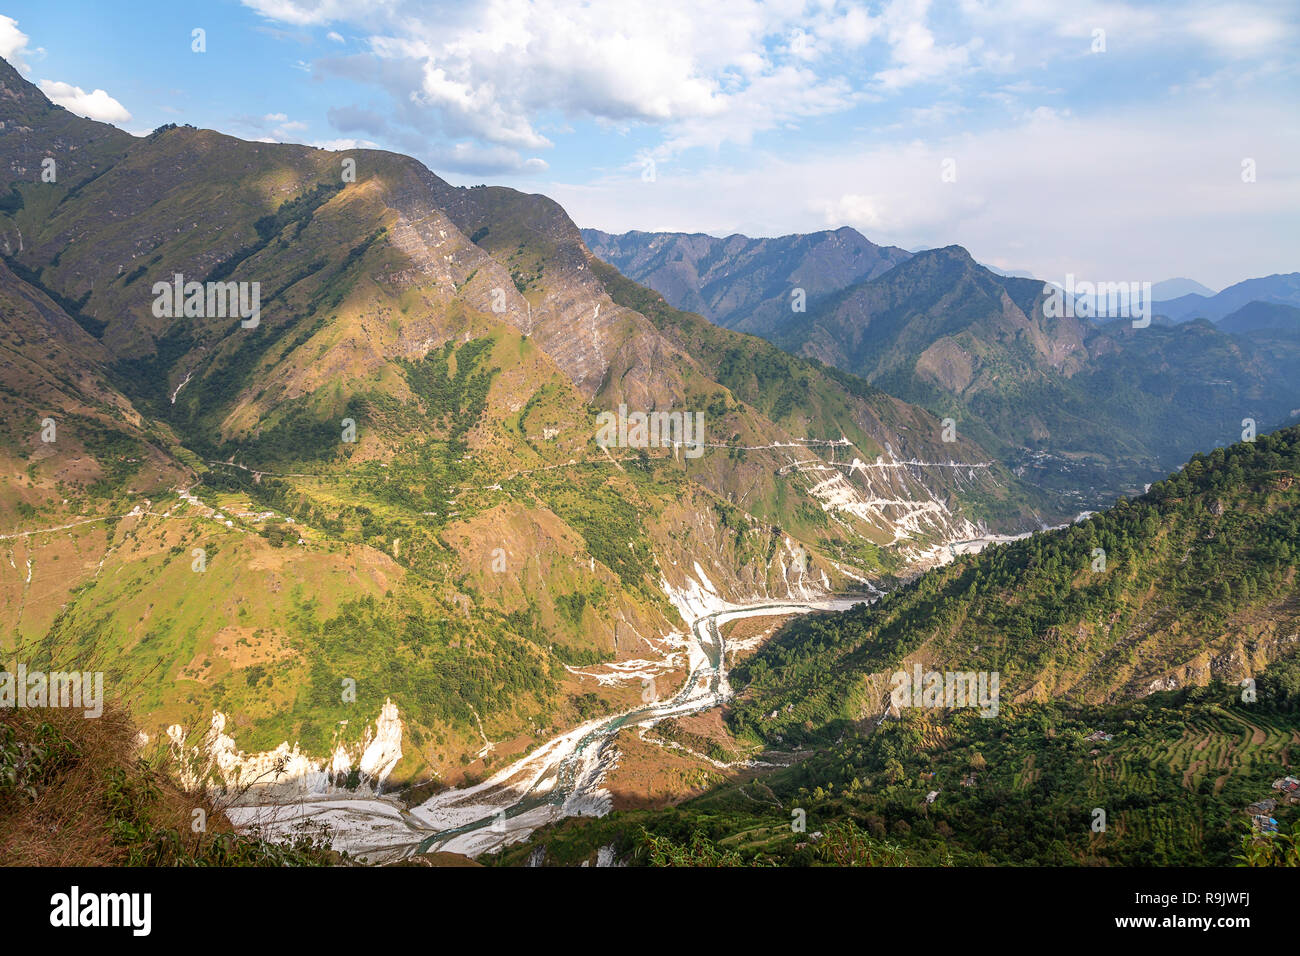 Vista aérea del valle del río de montaña con vistas panorámicas del paisaje cerca Kausani Uttarakhand. Foto de stock